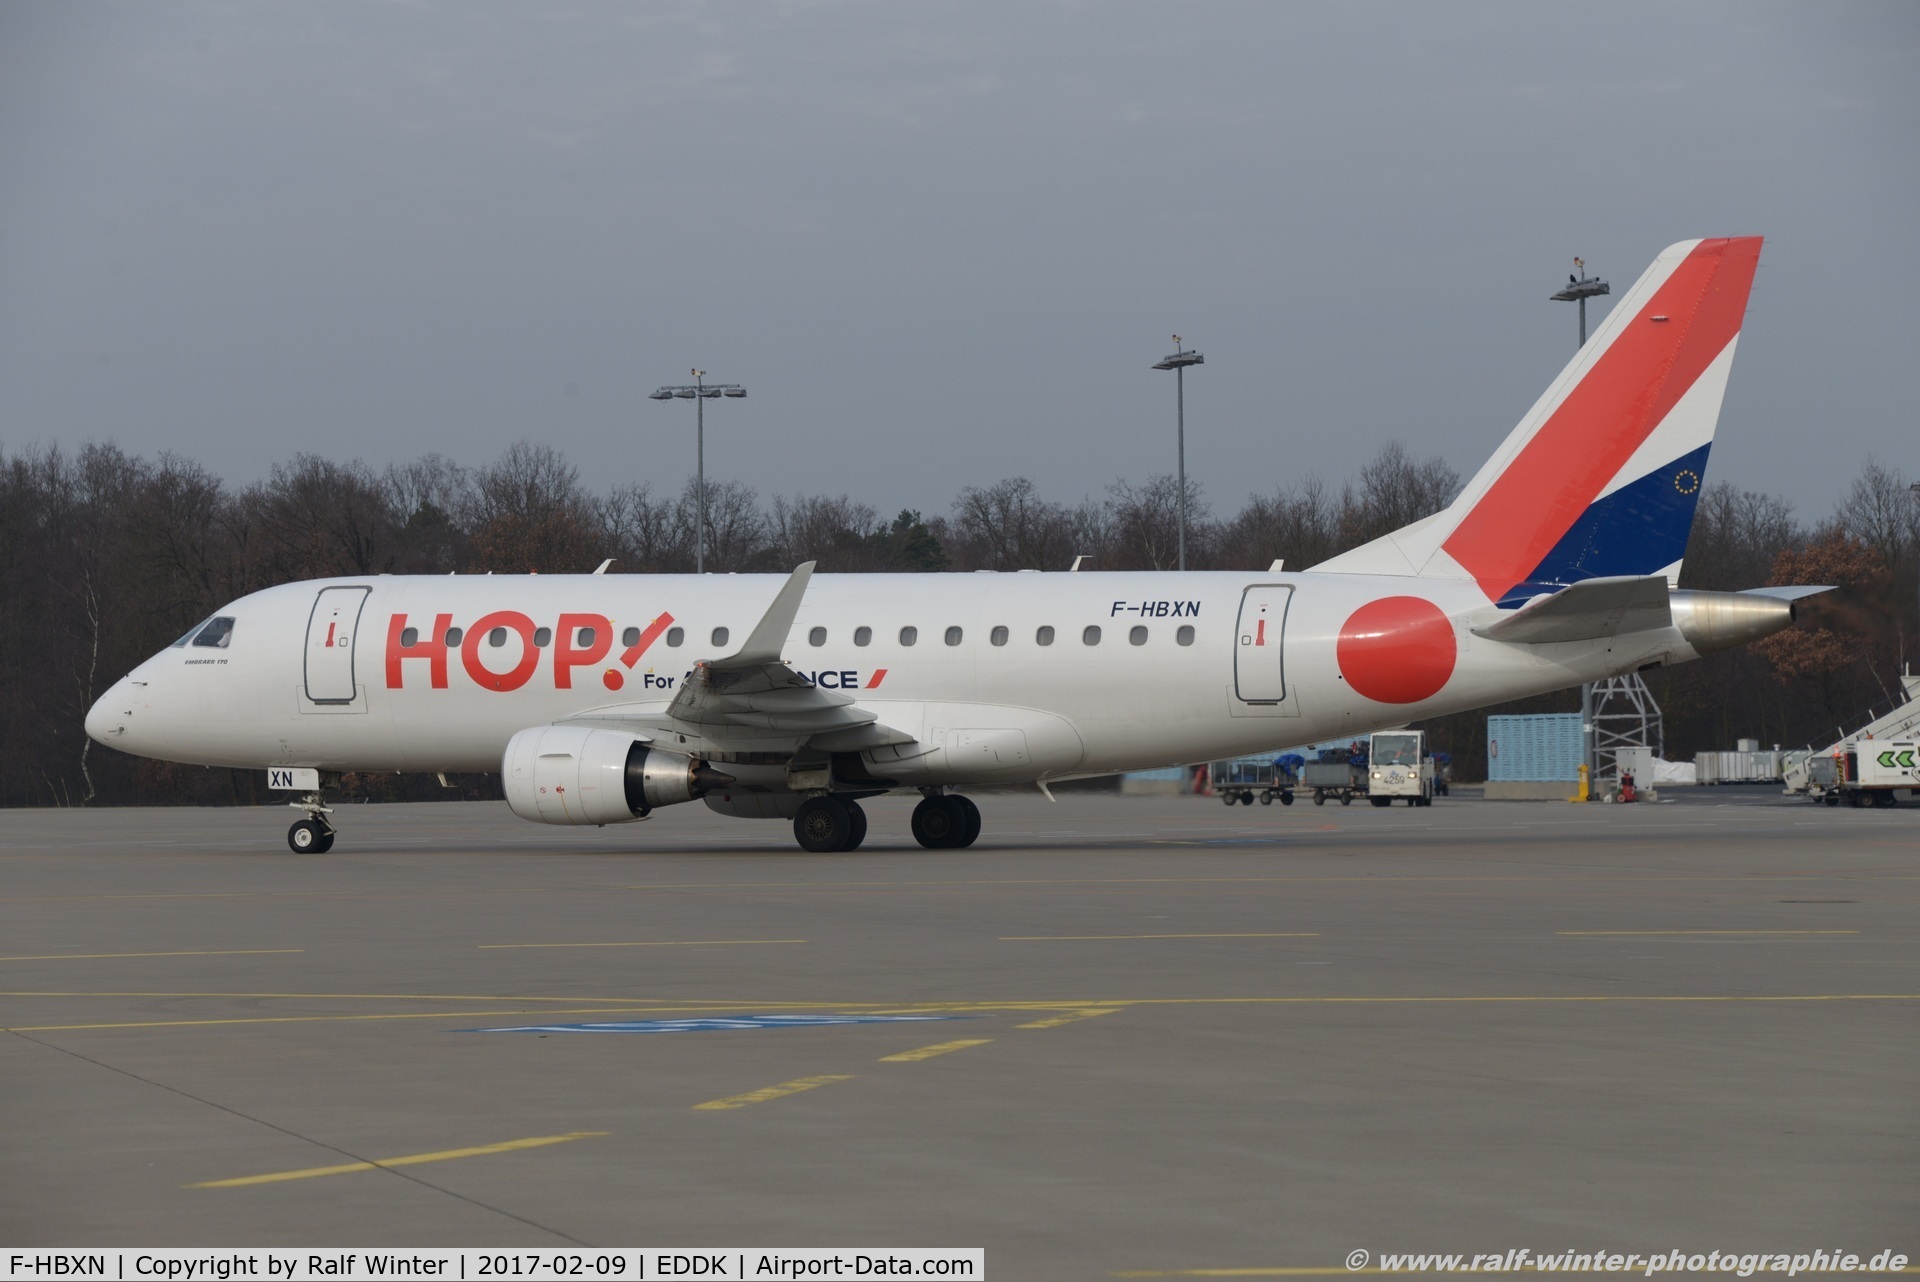 F-HBXN, 2003 Embraer 170LR (ERJ-170-100LR) C/N 17000011, EMBRAER 	ERJ-170LR (170-100LR) - HOP [A5] HOP! - 17000011 - F-HBXN - 09.02.2017 - CGN